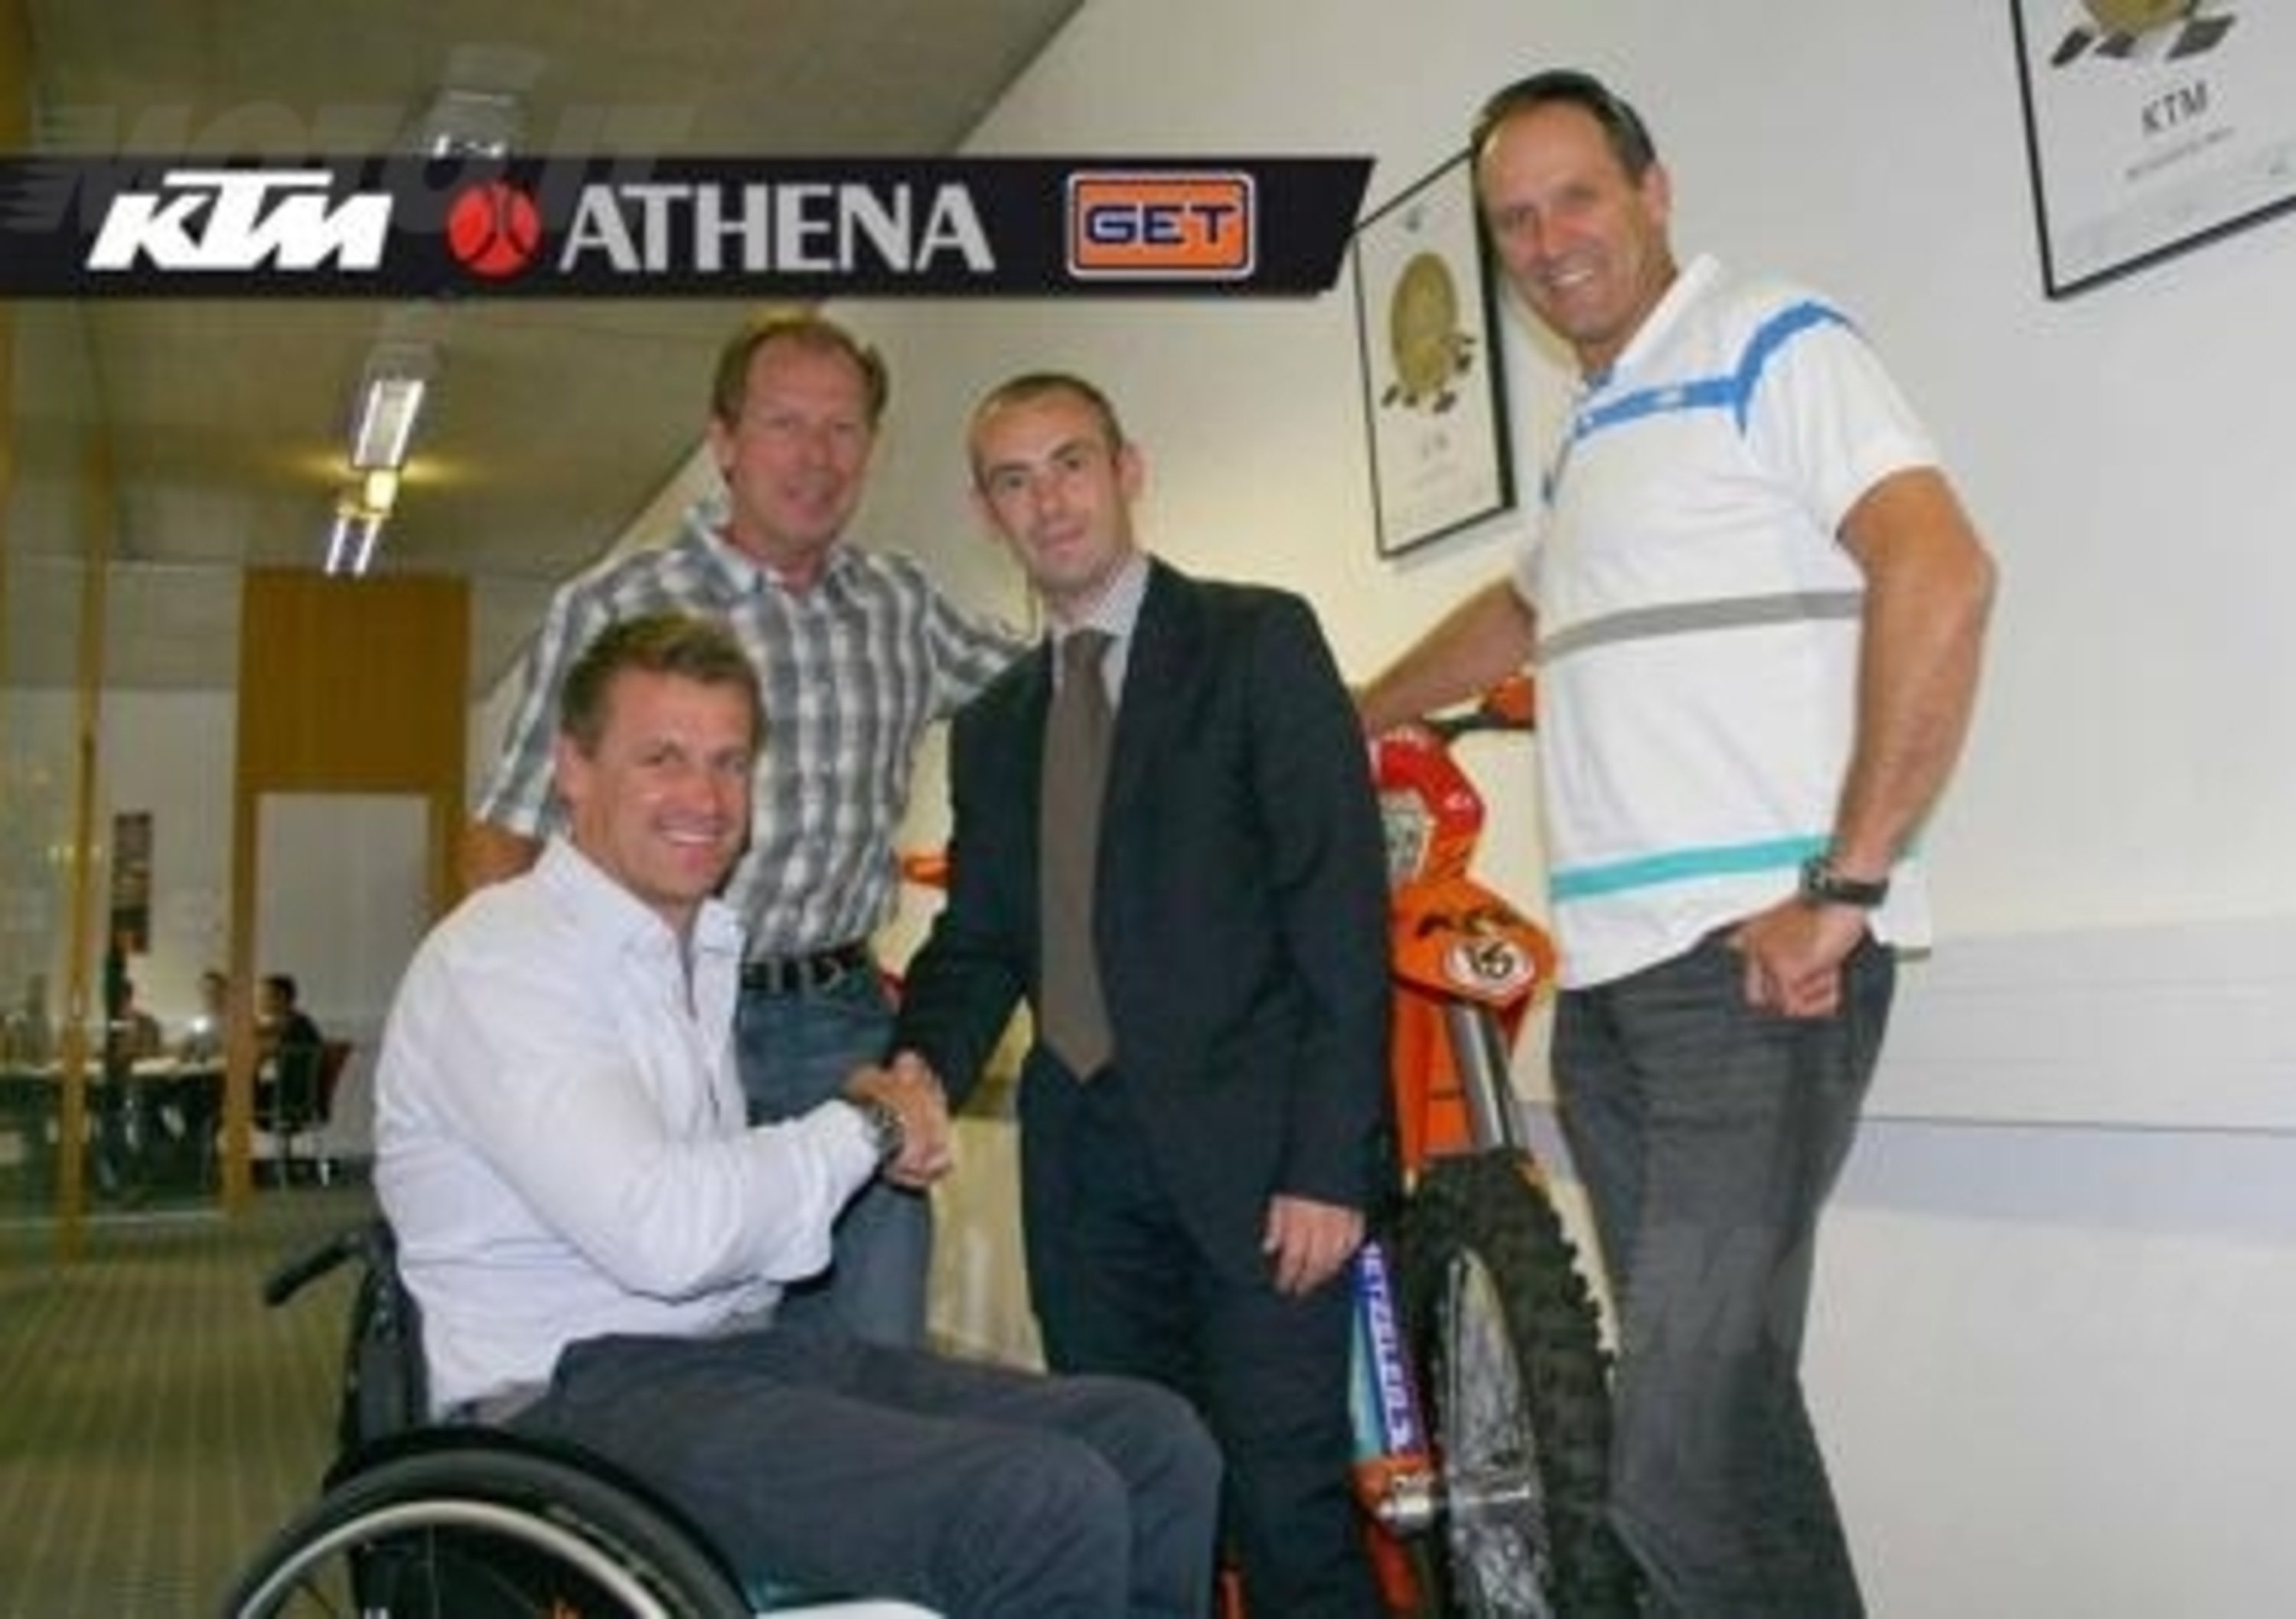 KTM annuncia la partnership con Athena-GET